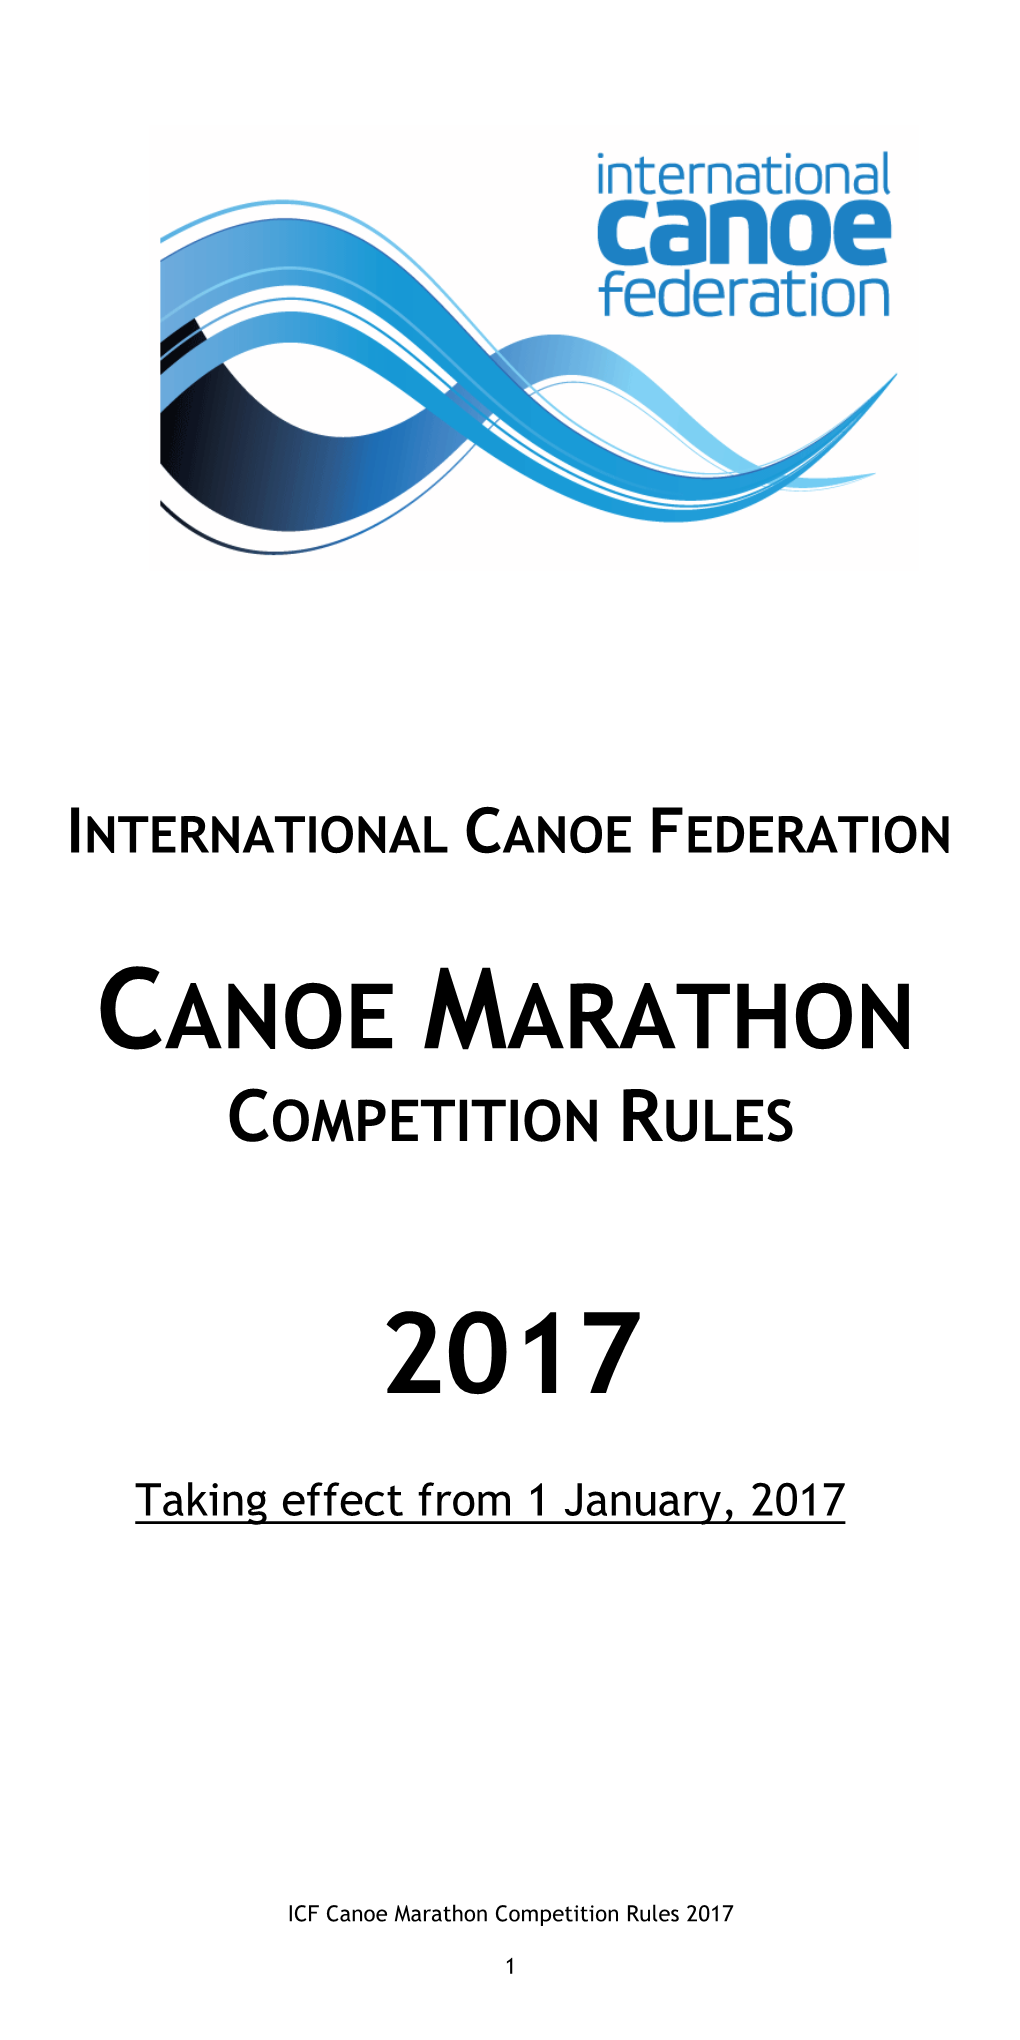 ICF Marathon Rules